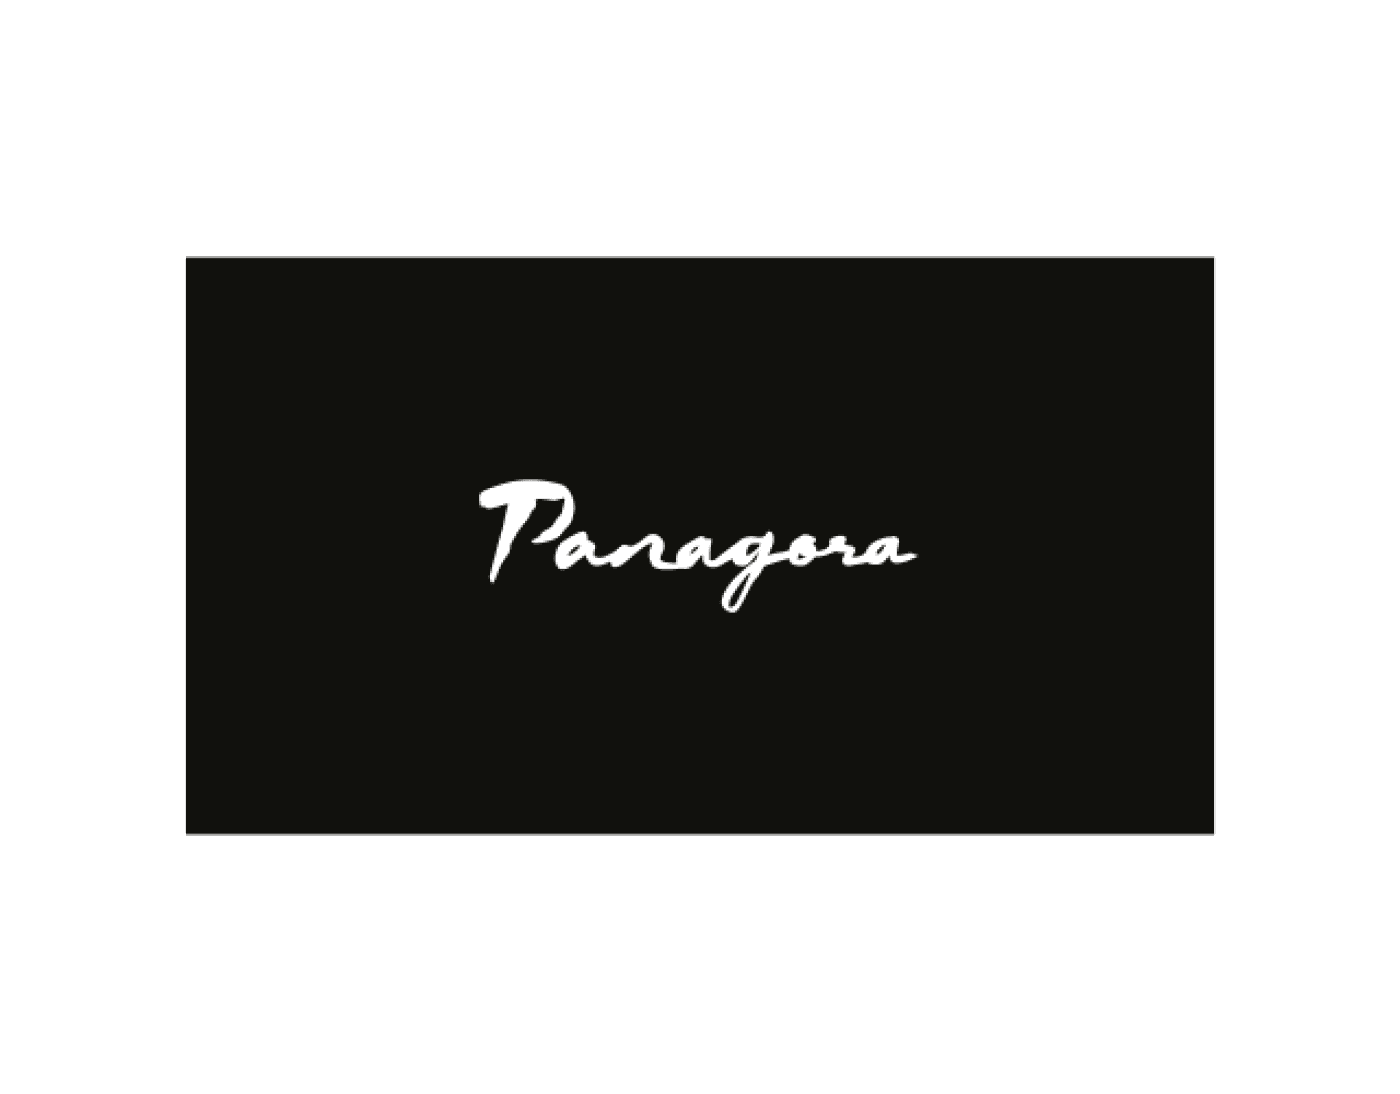 panagora-640x500-01.png